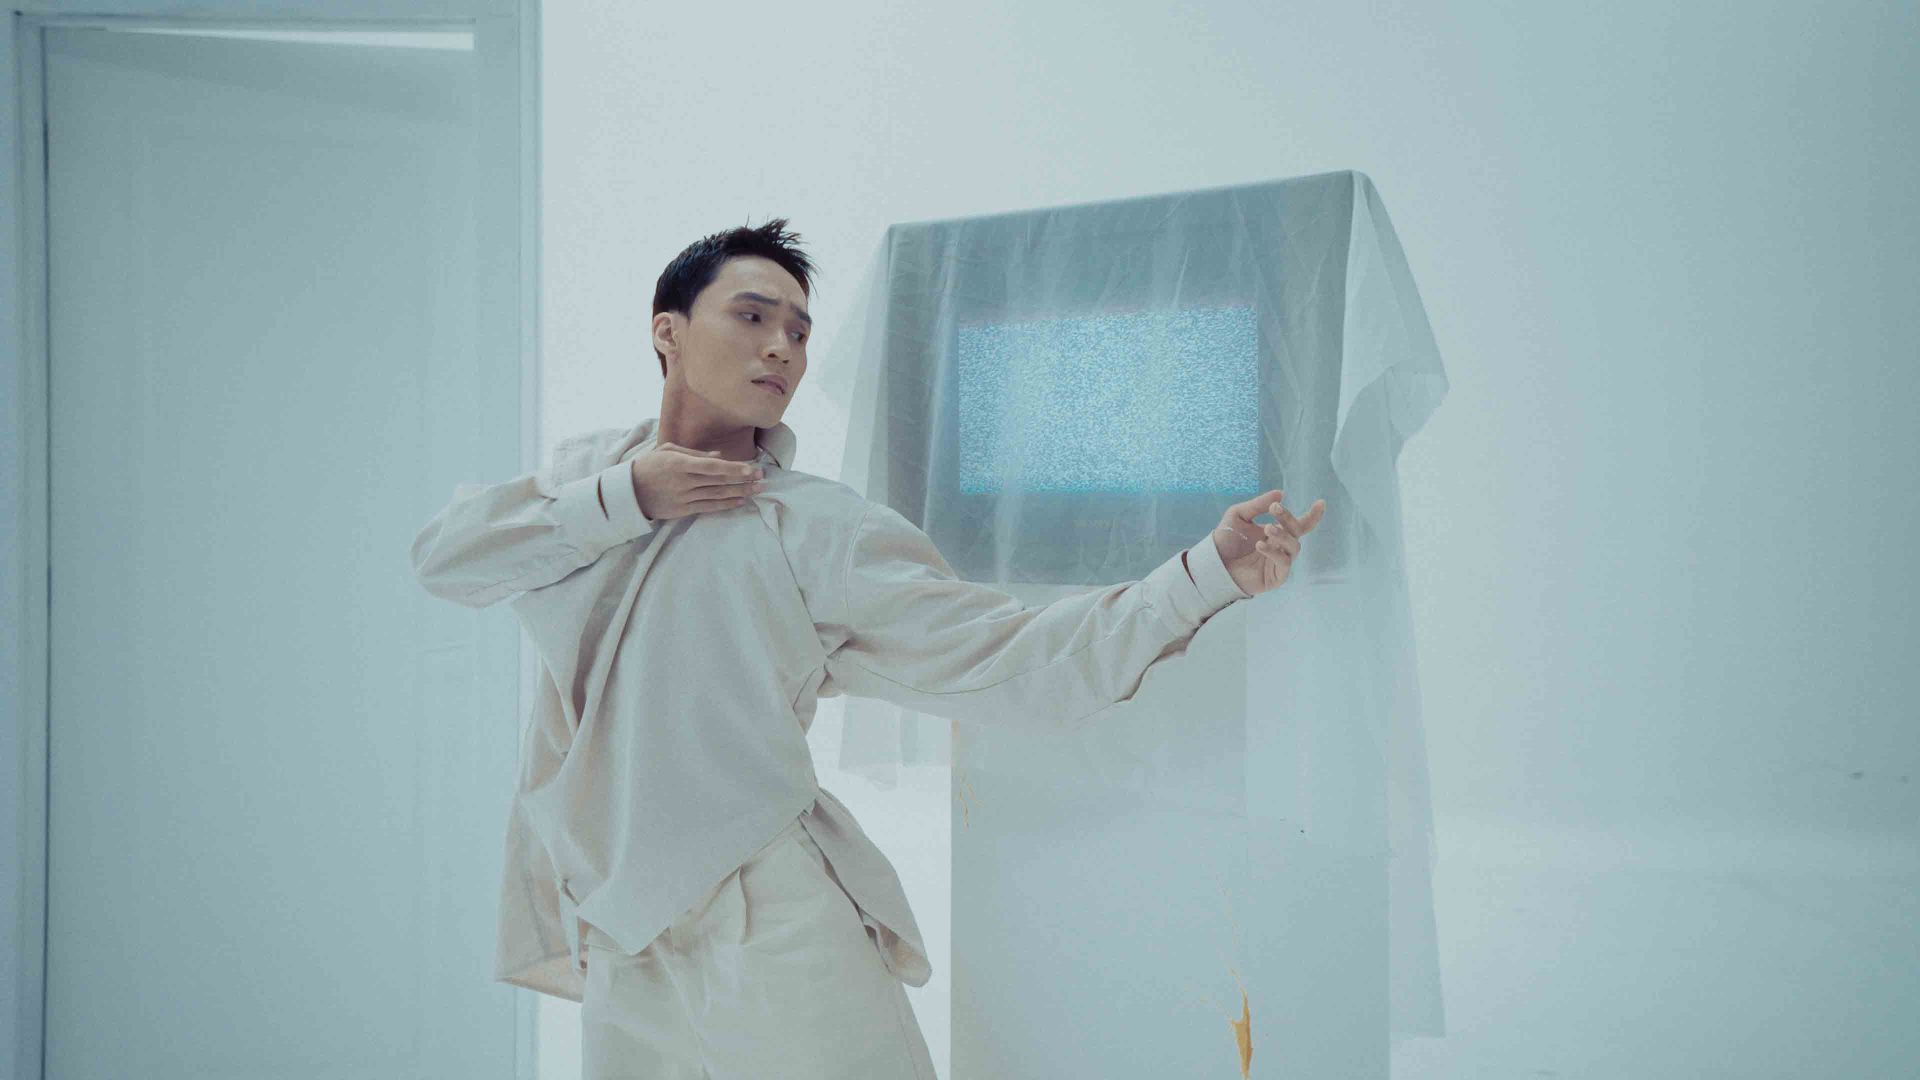 Ca sĩ Kiey tung MV đầu tiên trong album vol.3, hình ảnh đậm màu sắc “đam mỹ” - ảnh 4